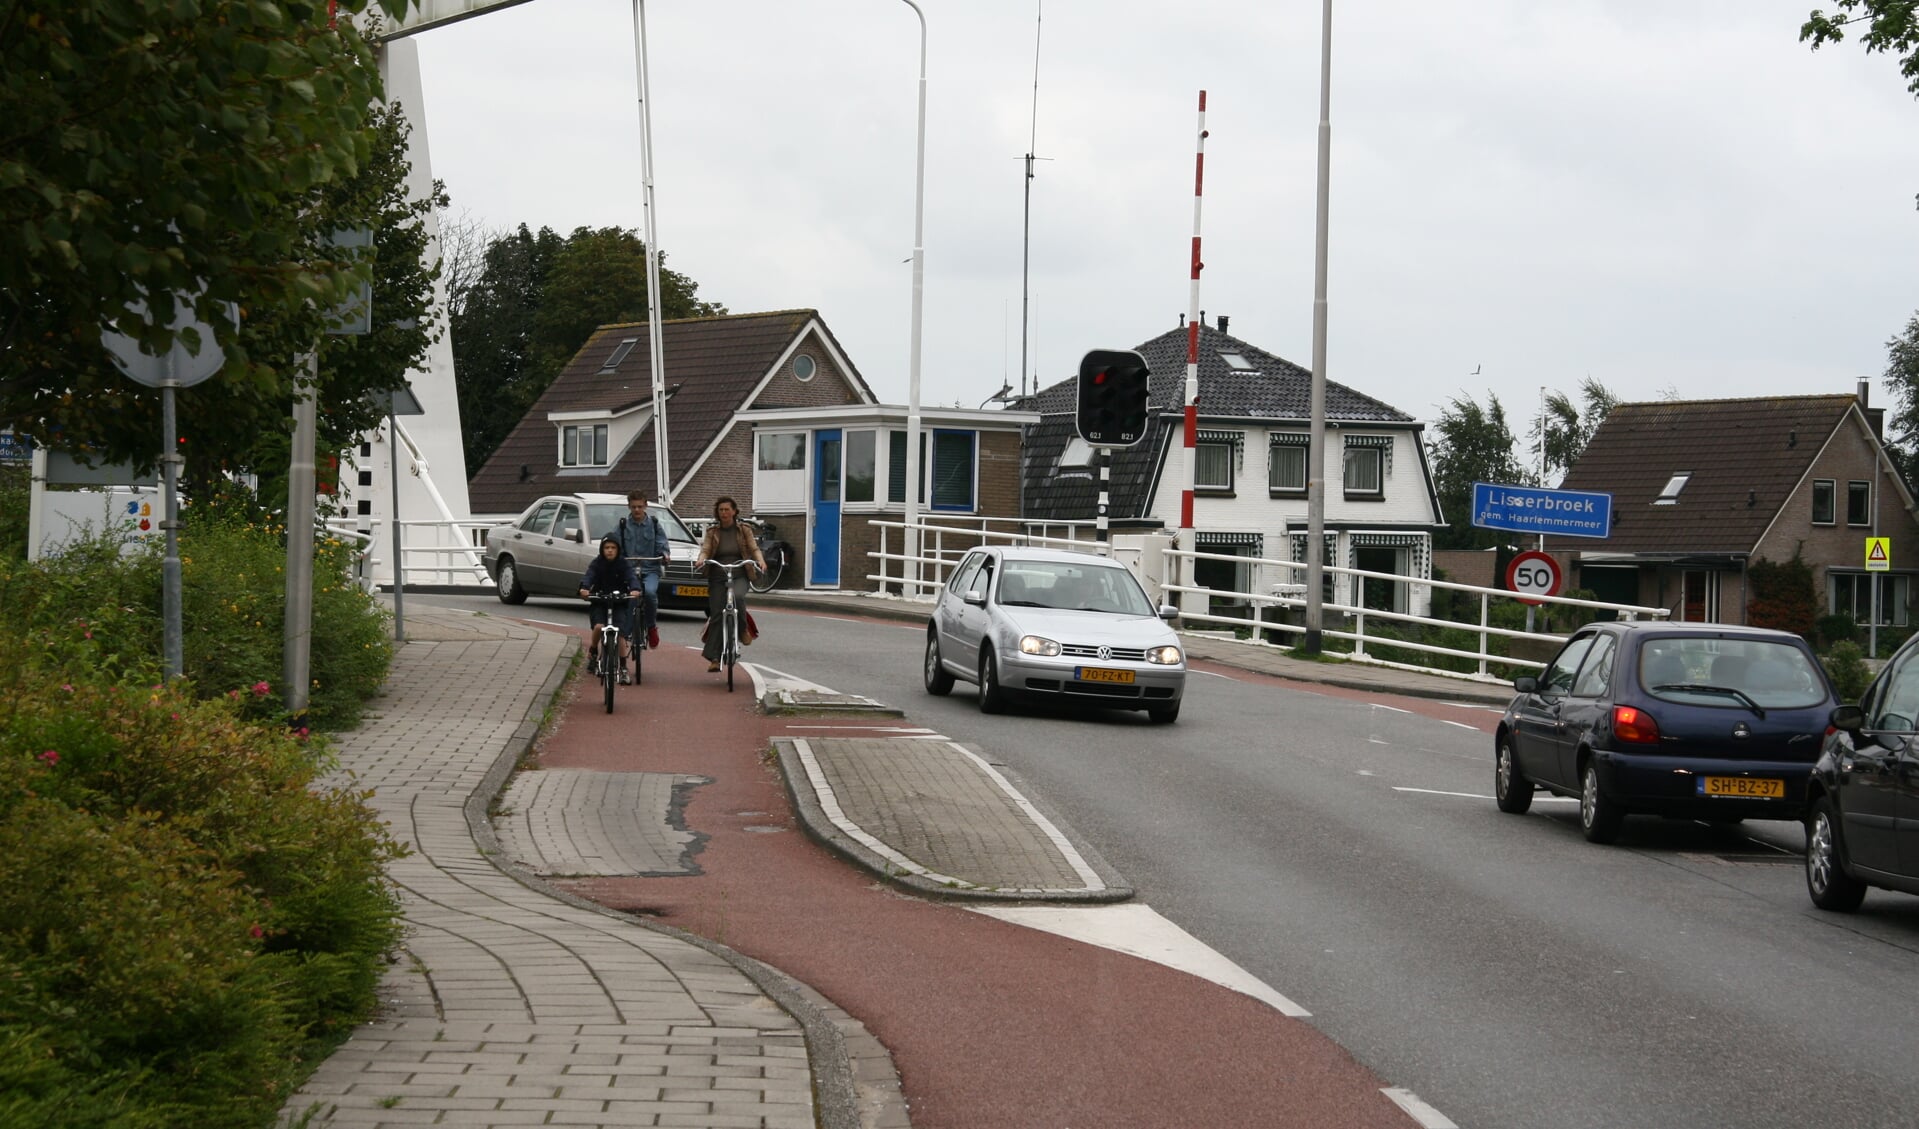 De gemeente wil de nabijheid van Lisserbroek benutten, zodat de meeste interne verplaatsingen binnen die twee plaatsen lopend of per fiets gebeuren.